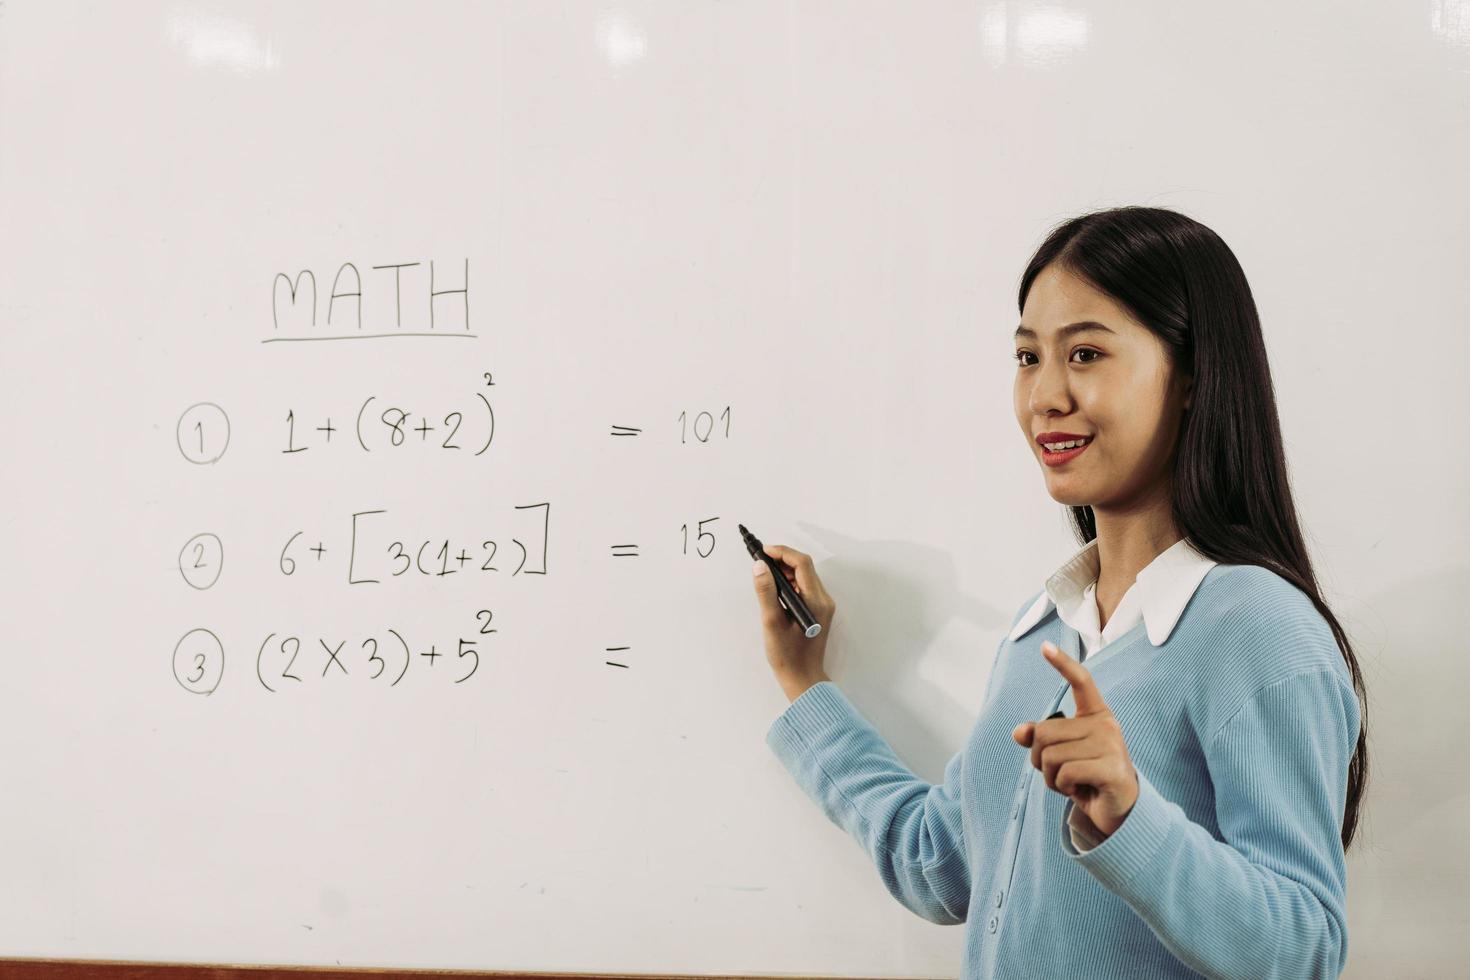 professora asiática está ensinando os alunos na sala de aula enquanto aponta para números no quadro branco. foto